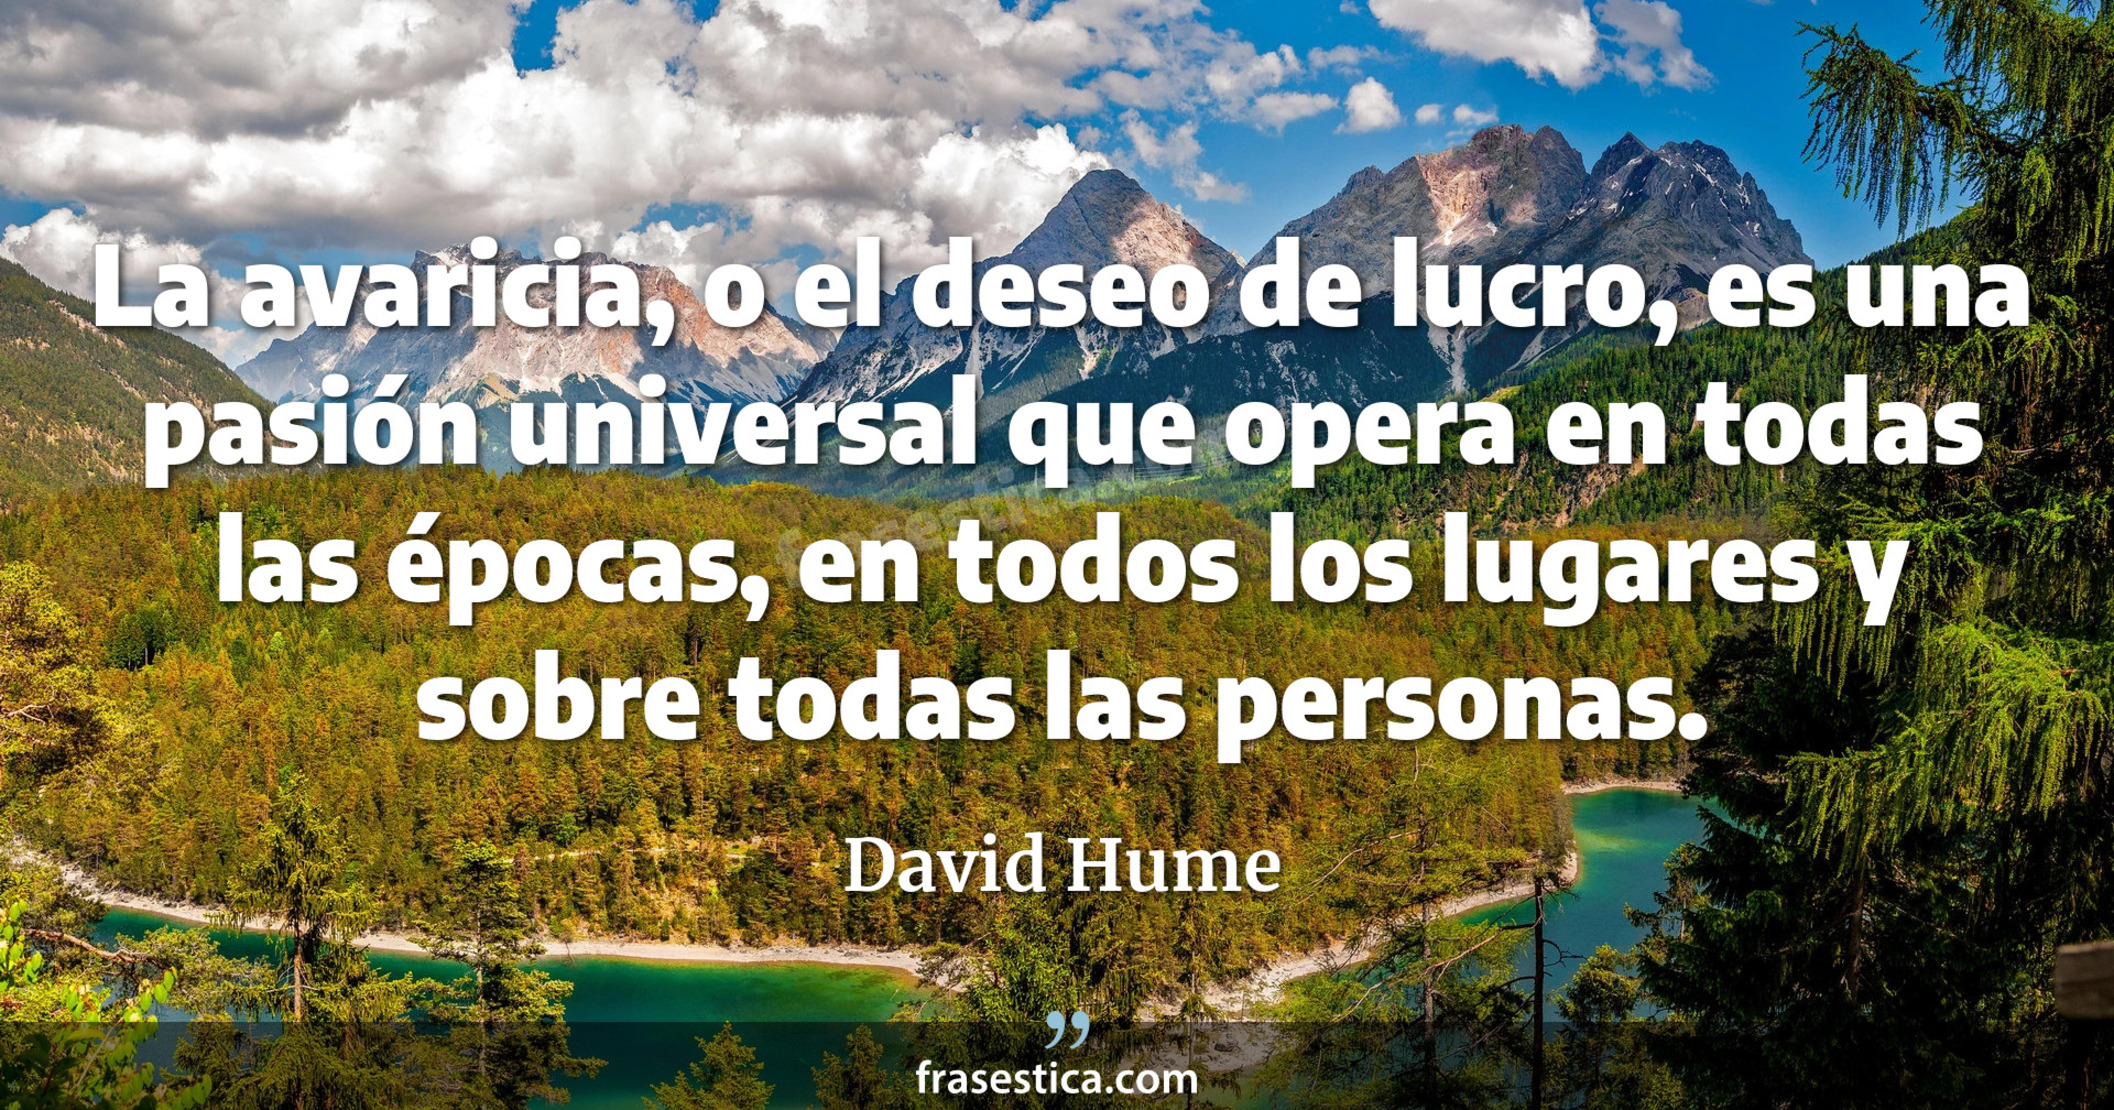 La avaricia, o el deseo de lucro, es una pasión universal que opera en todas las épocas, en todos los lugares y sobre todas las personas. - David Hume